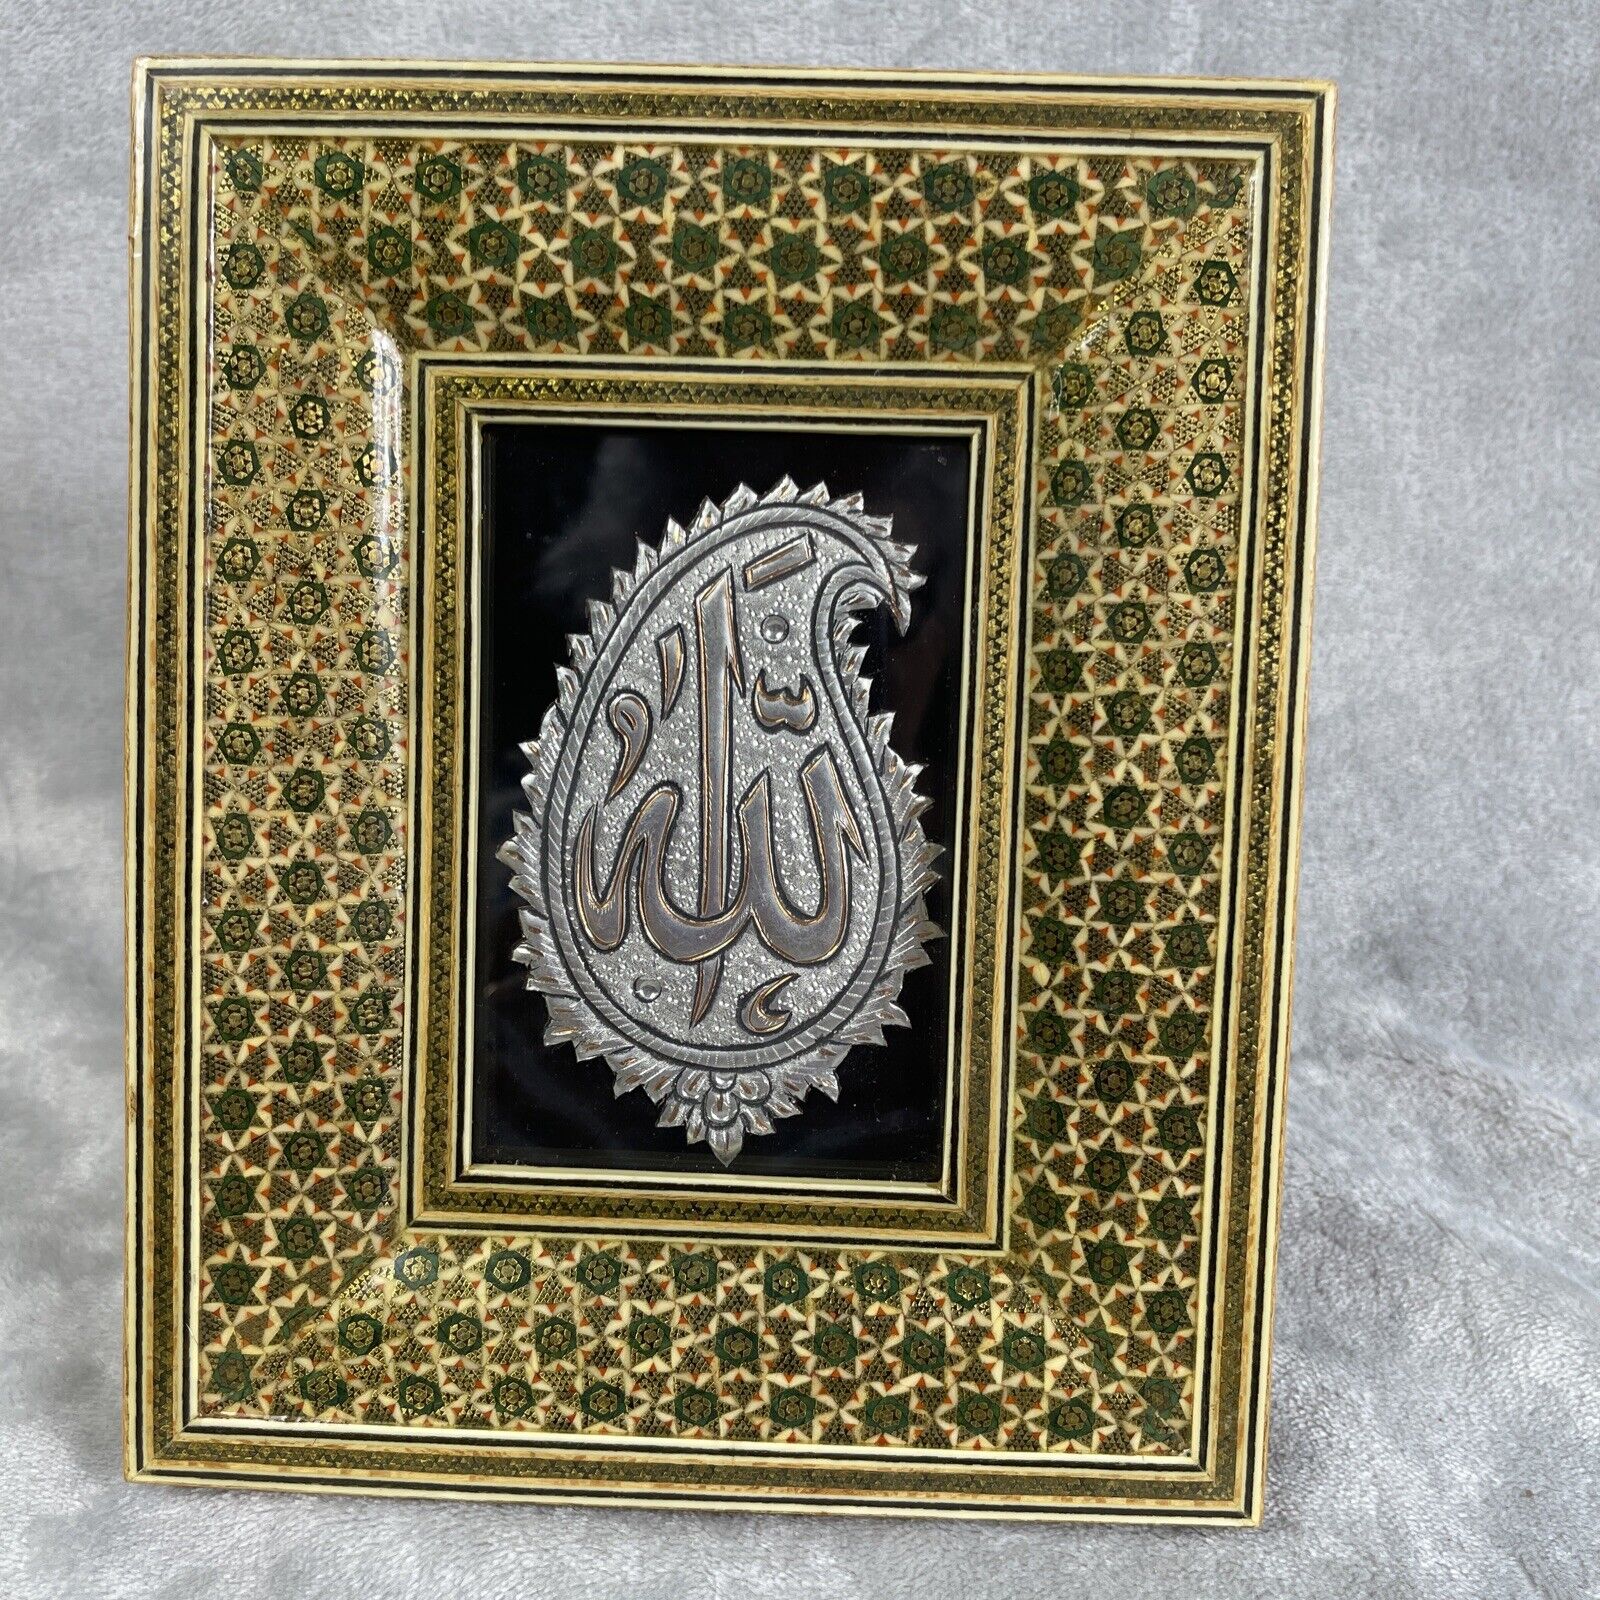 Handmade Framed Islamic Calligraphy Art 6.75” X 8.25”